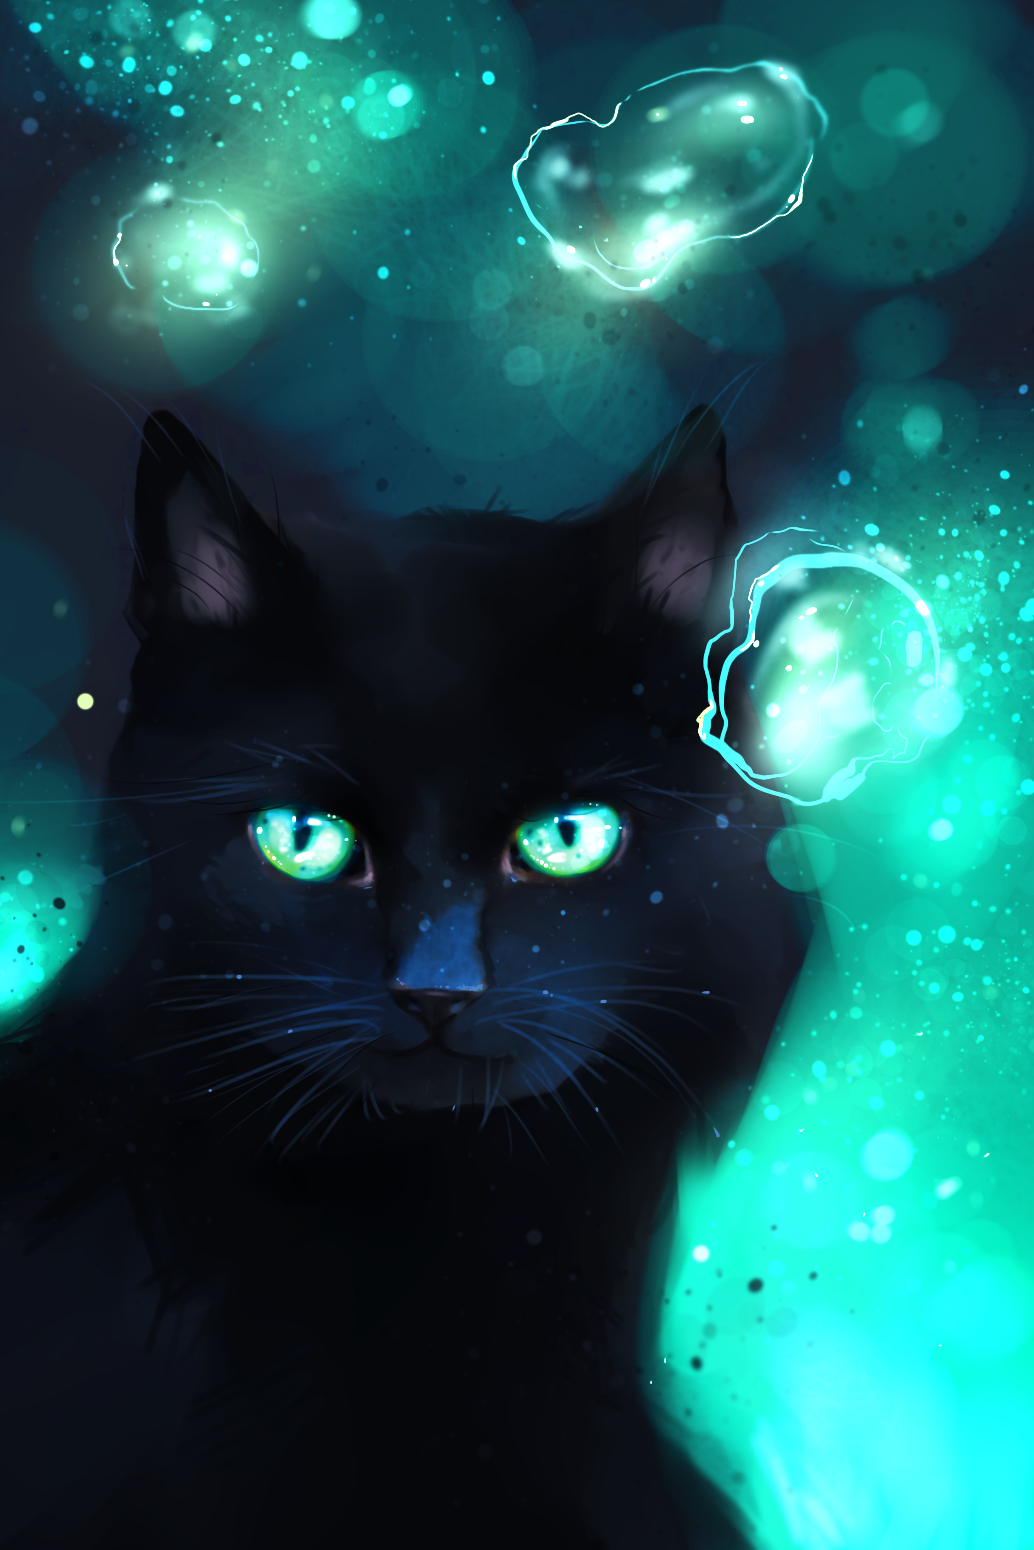 Аватар черный кот. БЕЛОЗВЁЗД коты Воители. Коты Воители чёрная кошка с голубыми глазами. Коты Воители чёрная кошка. Черный кот арт коты Воители.